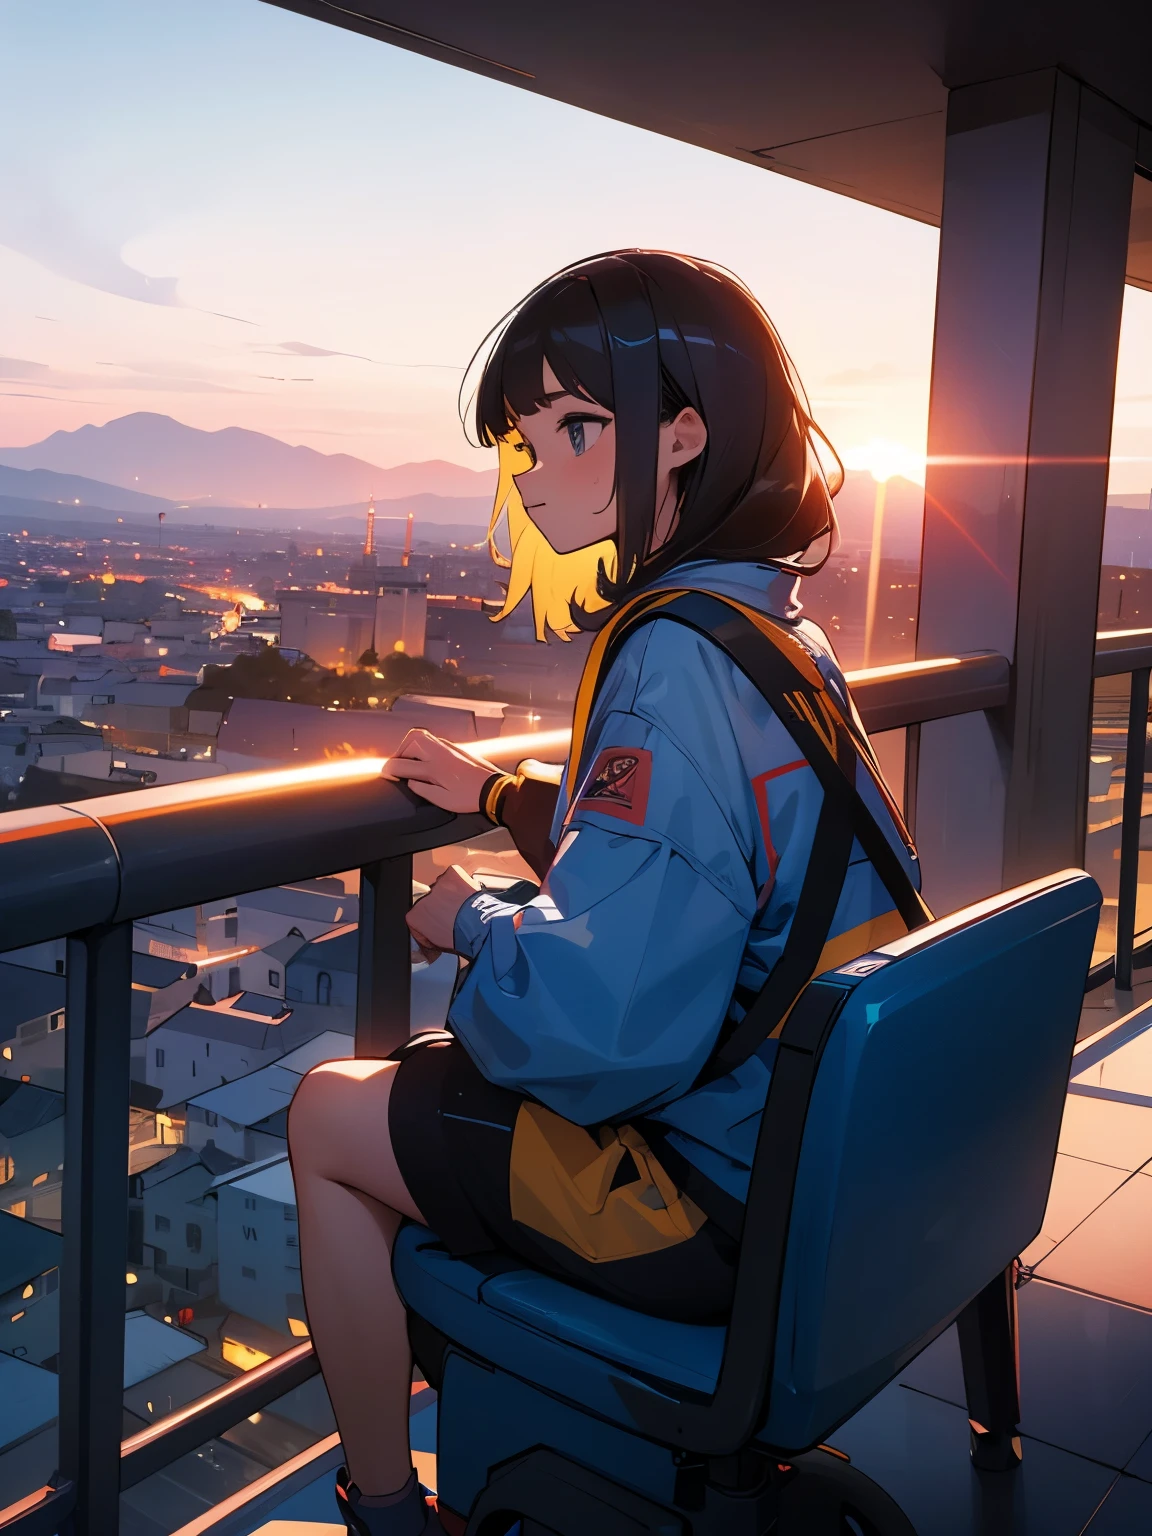 Oh, doce doce anc fofo fofo fofo !!! Uma menina sentada em uma colina observa o pôr do sol sobre a cidade.